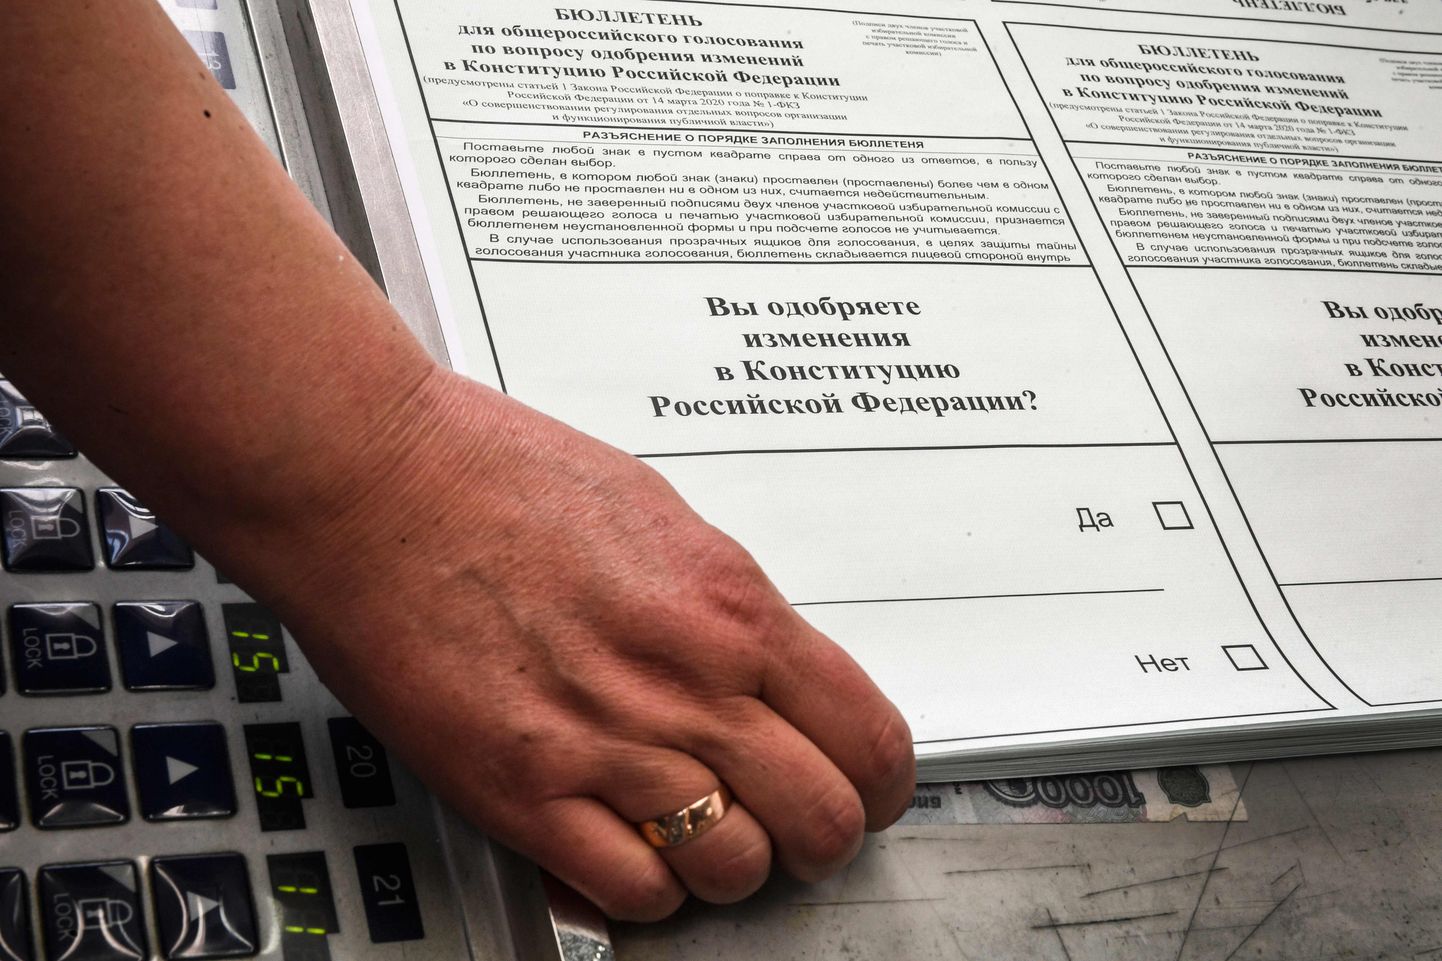 Krievijā ceturtdien sāksies iepriekšējā balsošana referendumā par konstitūcijas grozījumiem